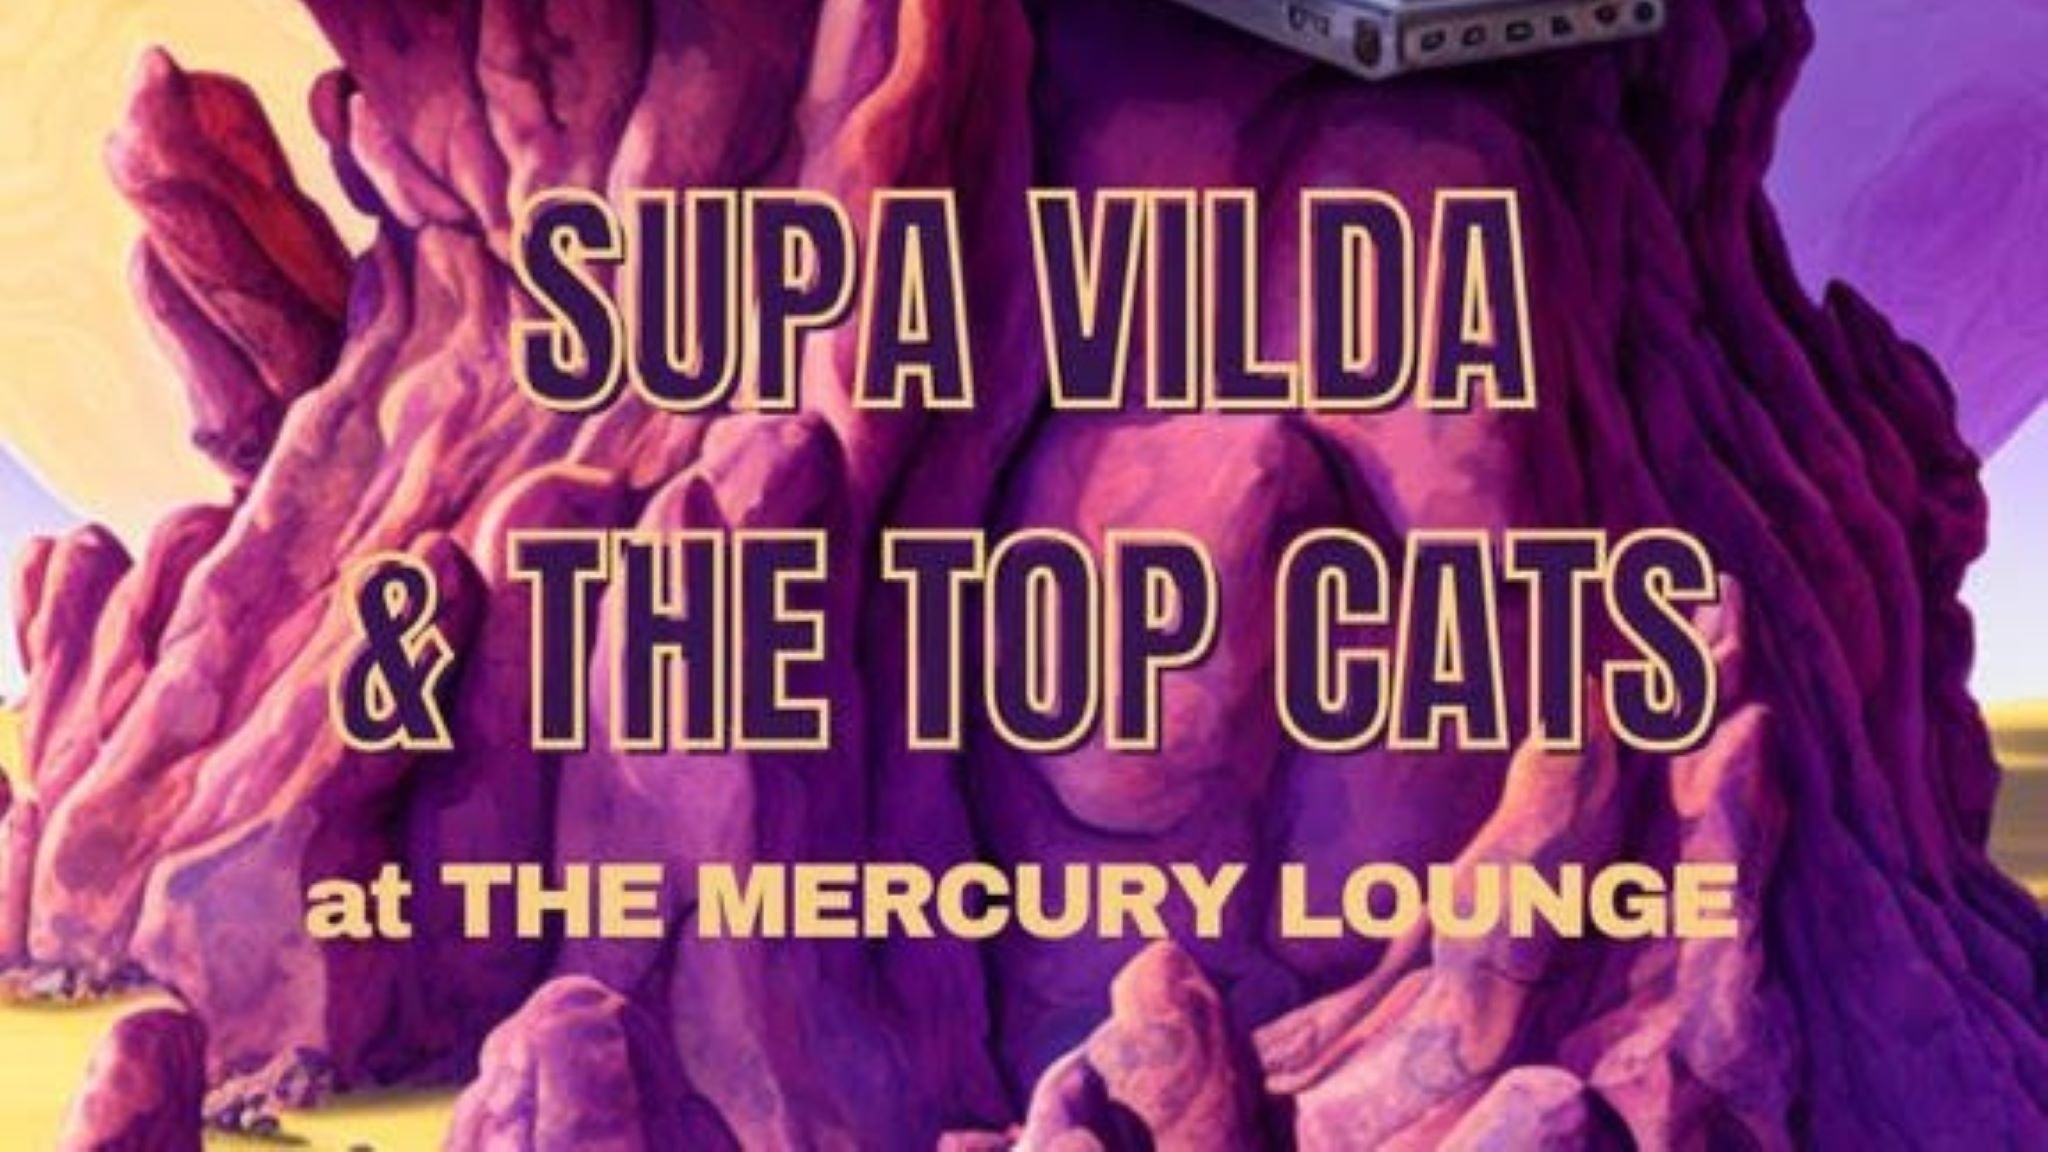 Supa Vilda, The Top Cats